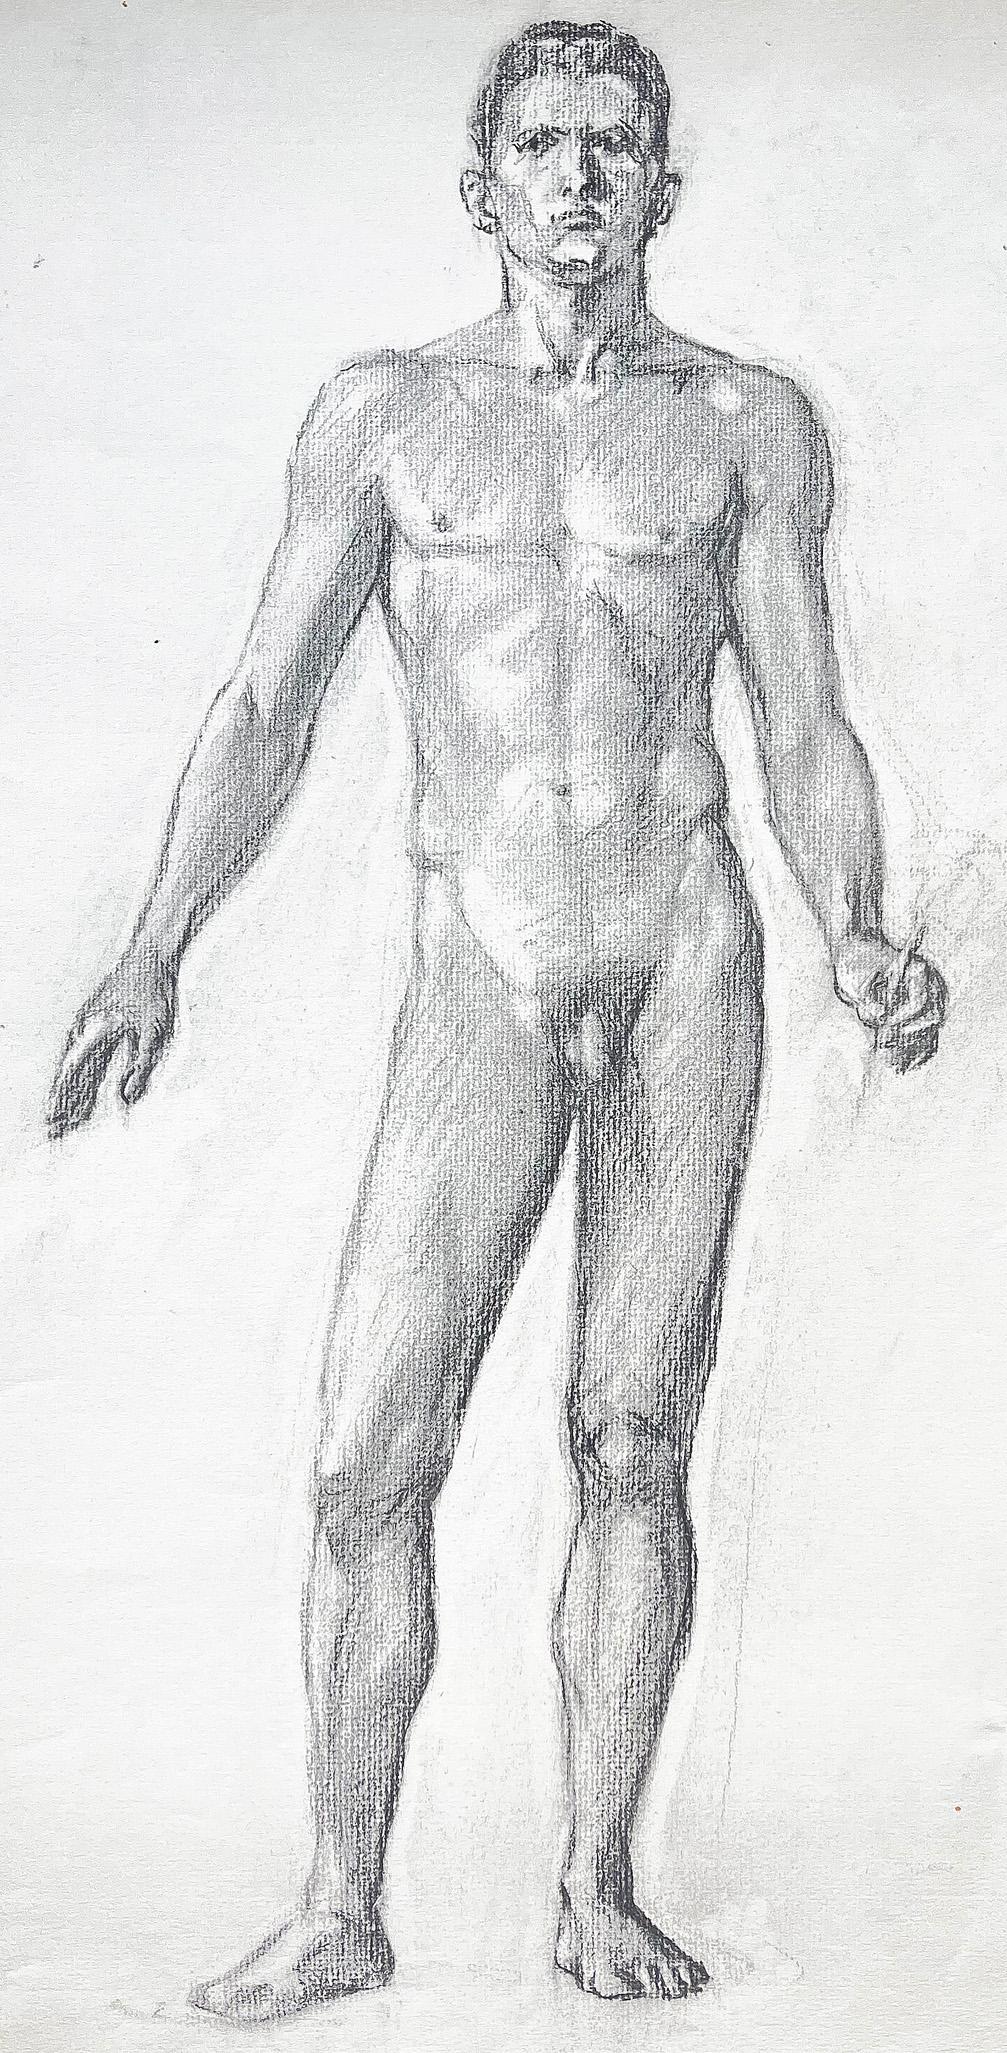 Ce dessin fort et confiant d'un nu masculin debout a été réalisé par Allyn Cox, probablement pour l'une des nombreuses peintures murales qu'il a peintes dans les années 1920, 1930 et 1940, à commencer par une série de peintures pour la William